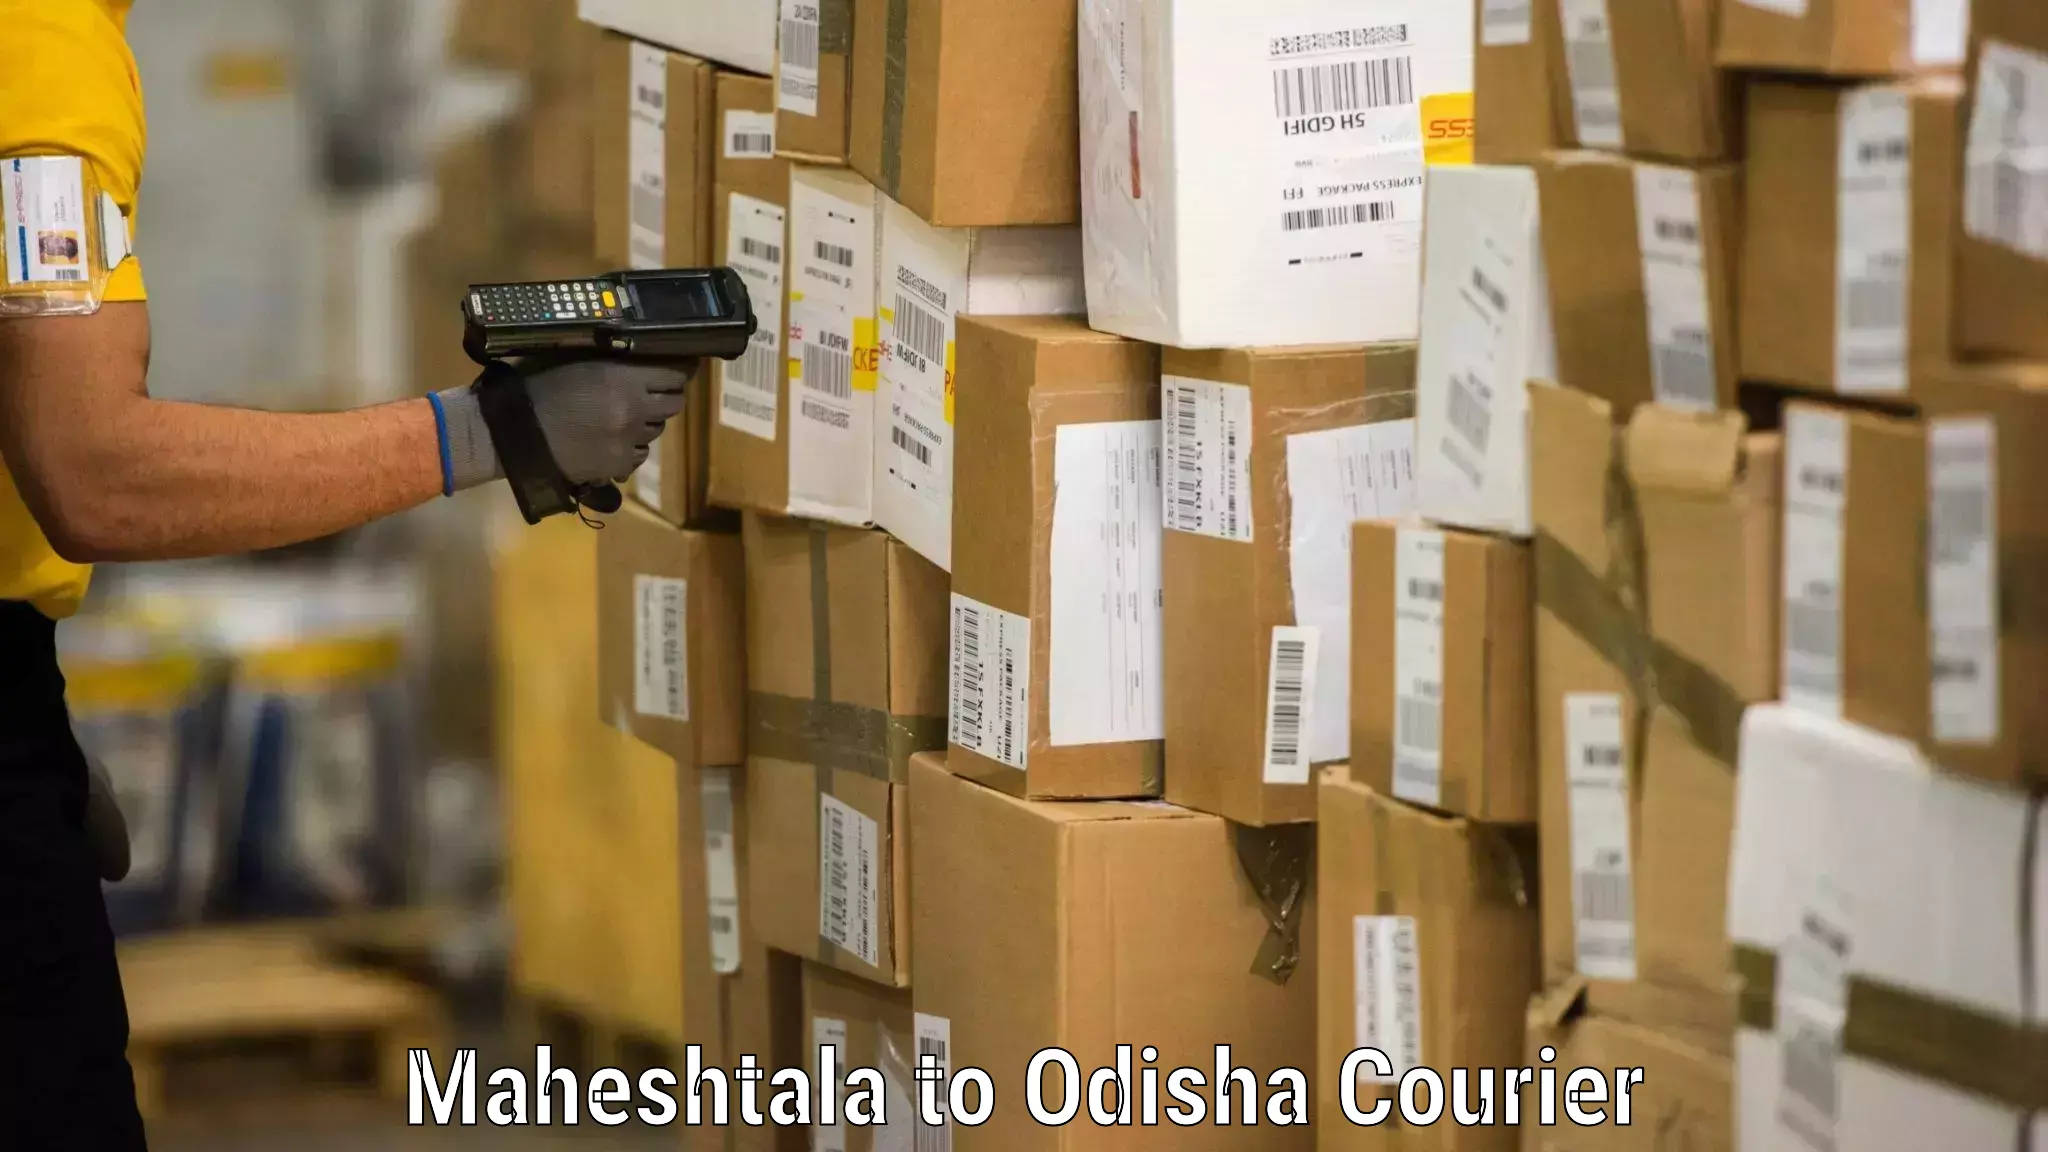 Moving and packing experts Maheshtala to Odisha